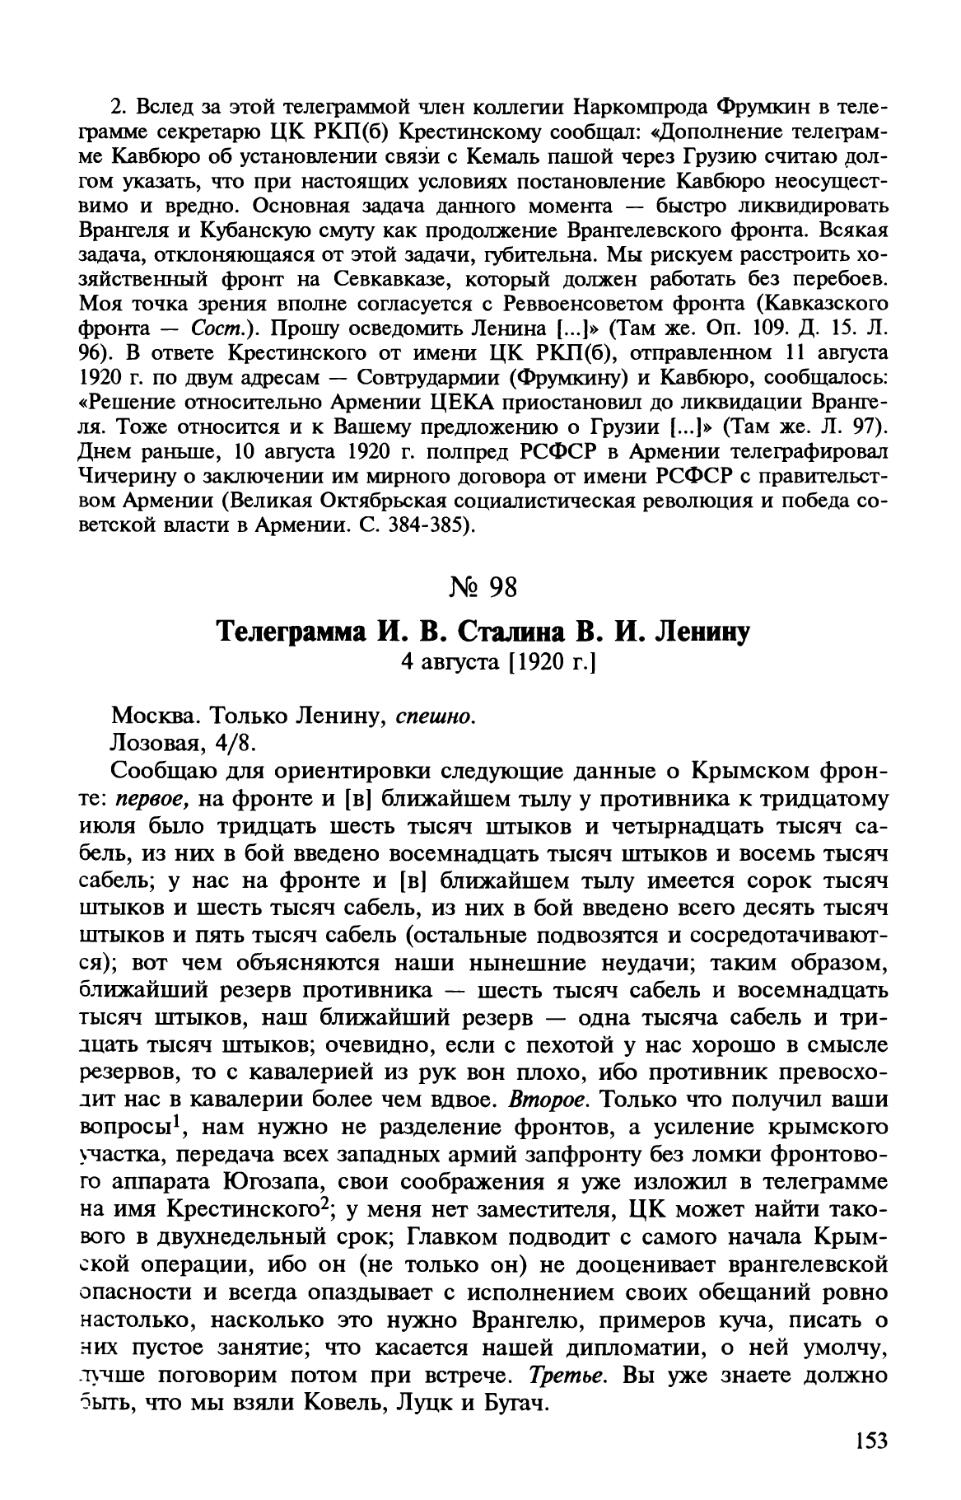 98. Телеграмма И. В. Сталина В. И. Ленину. 4 августа [1920 г.]